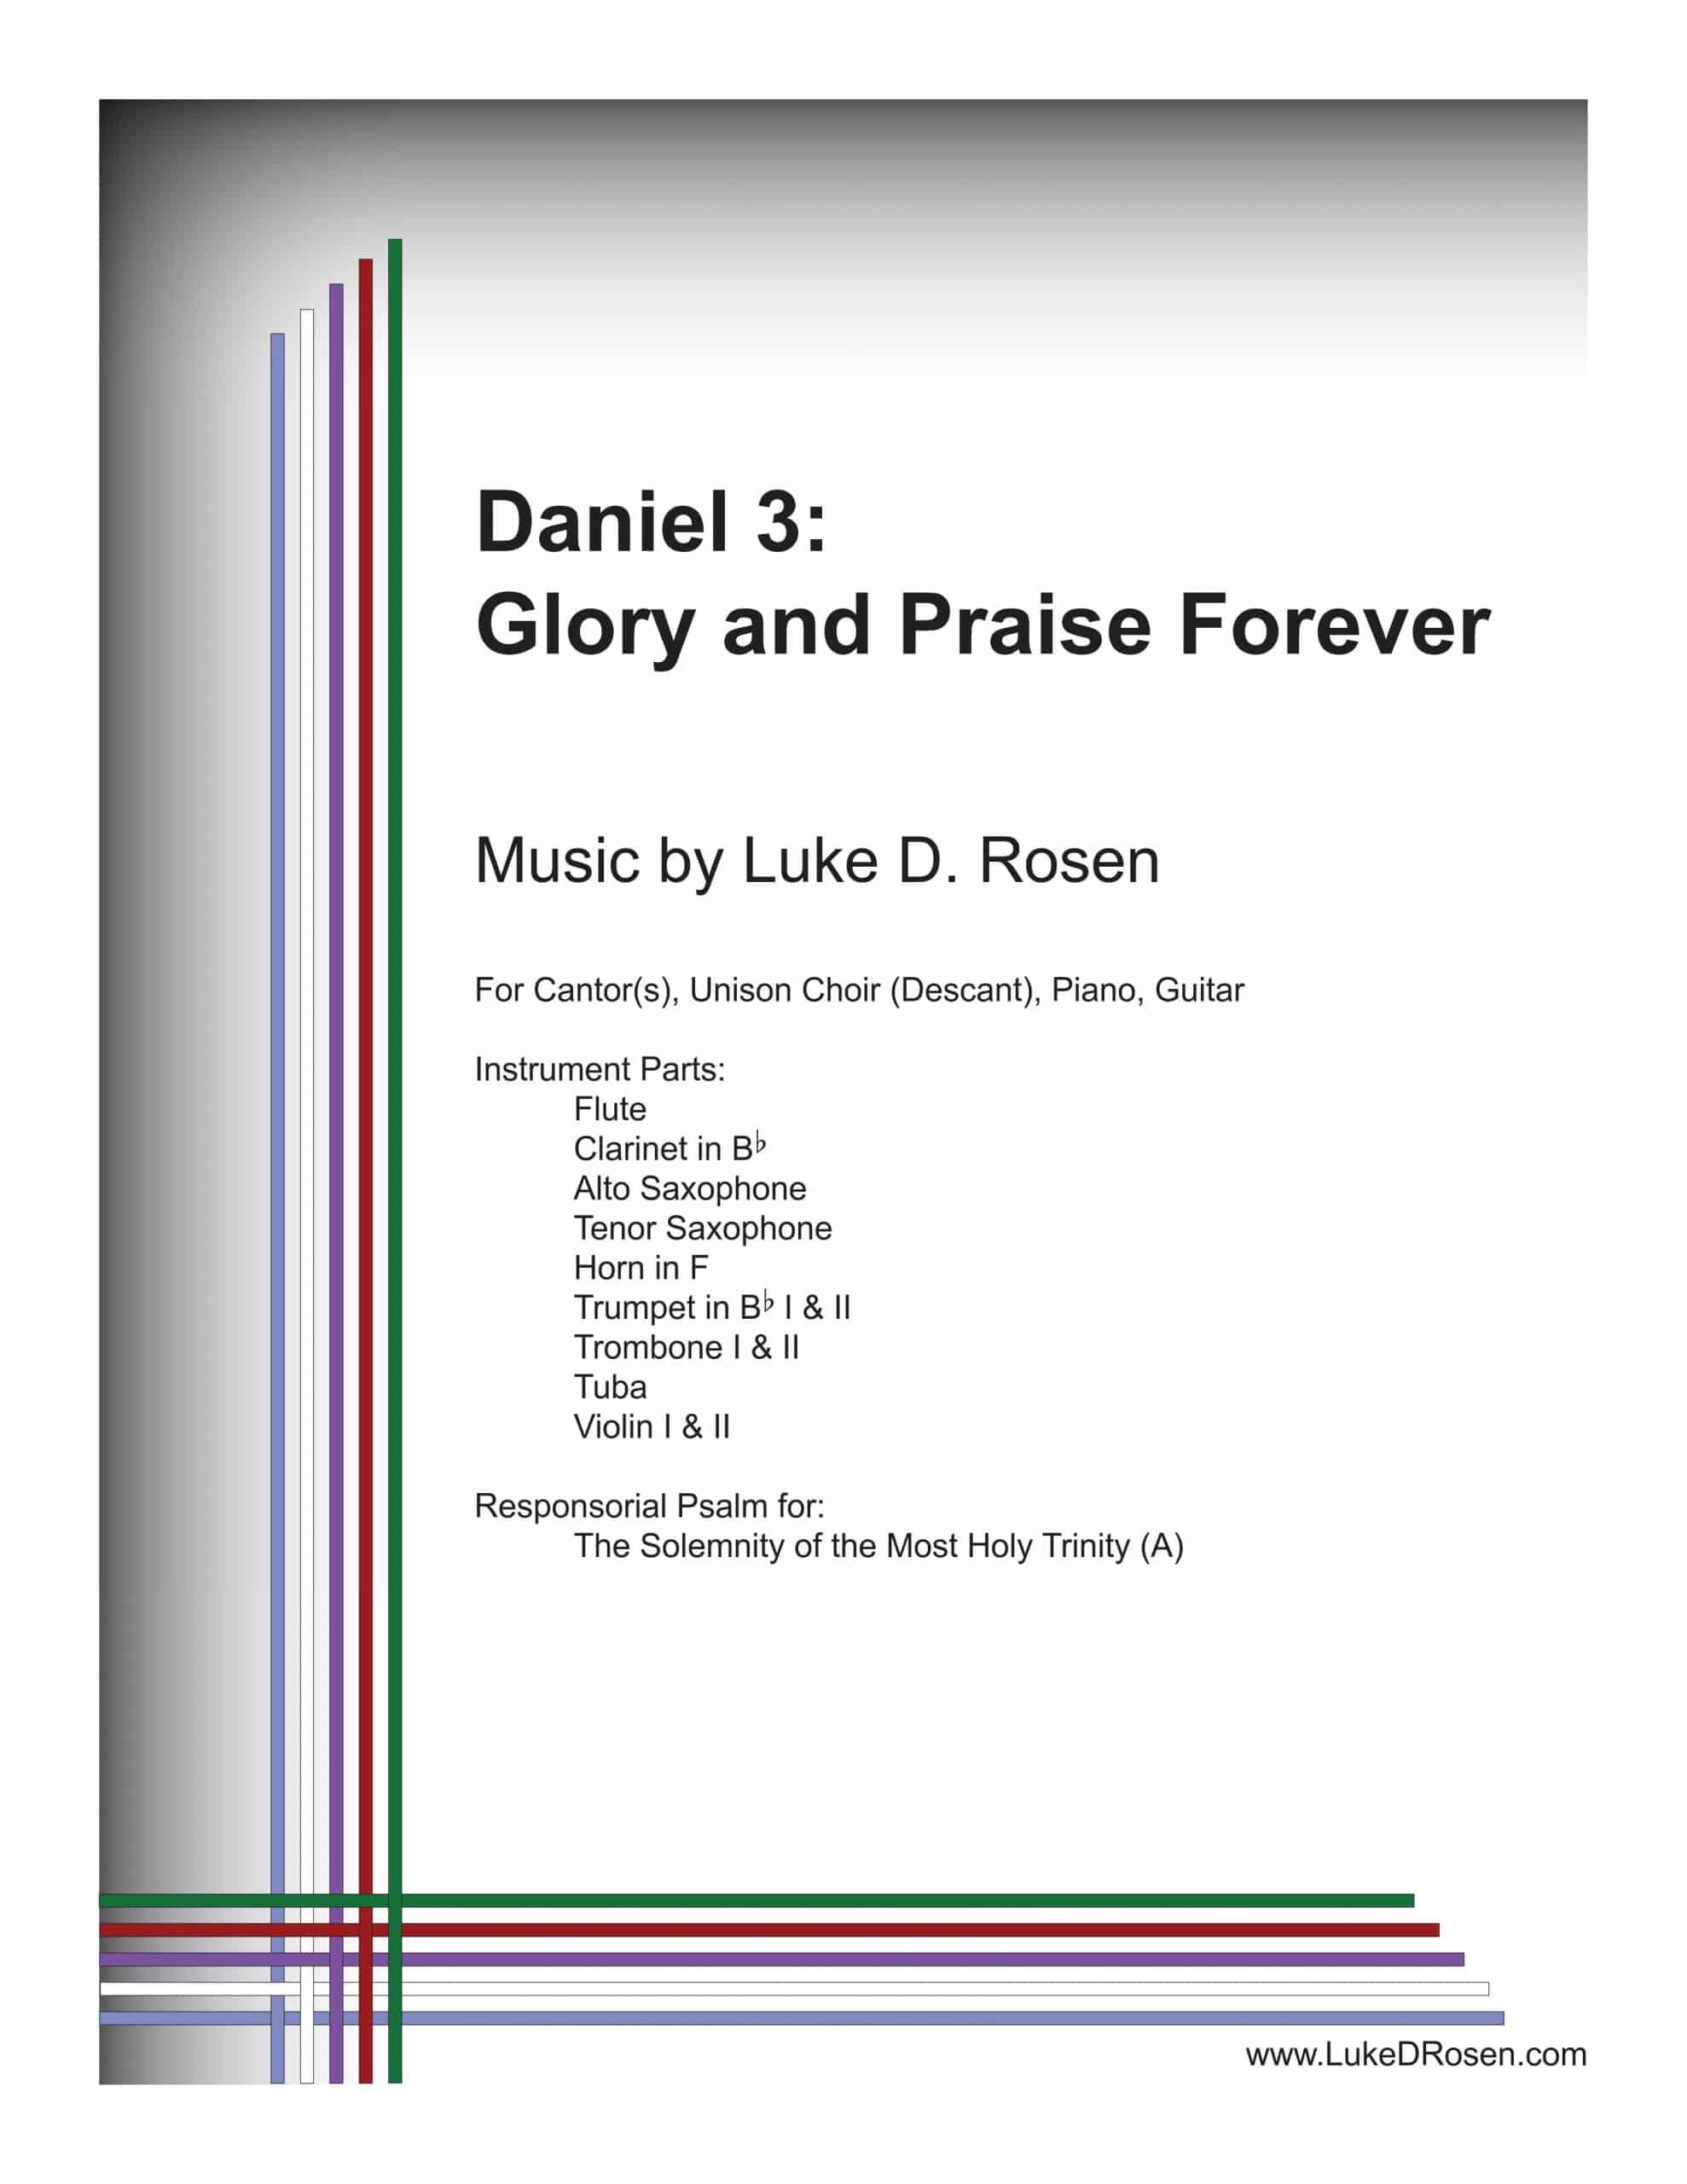 Daniel 3-Glory and Praise Forever (Rosen)